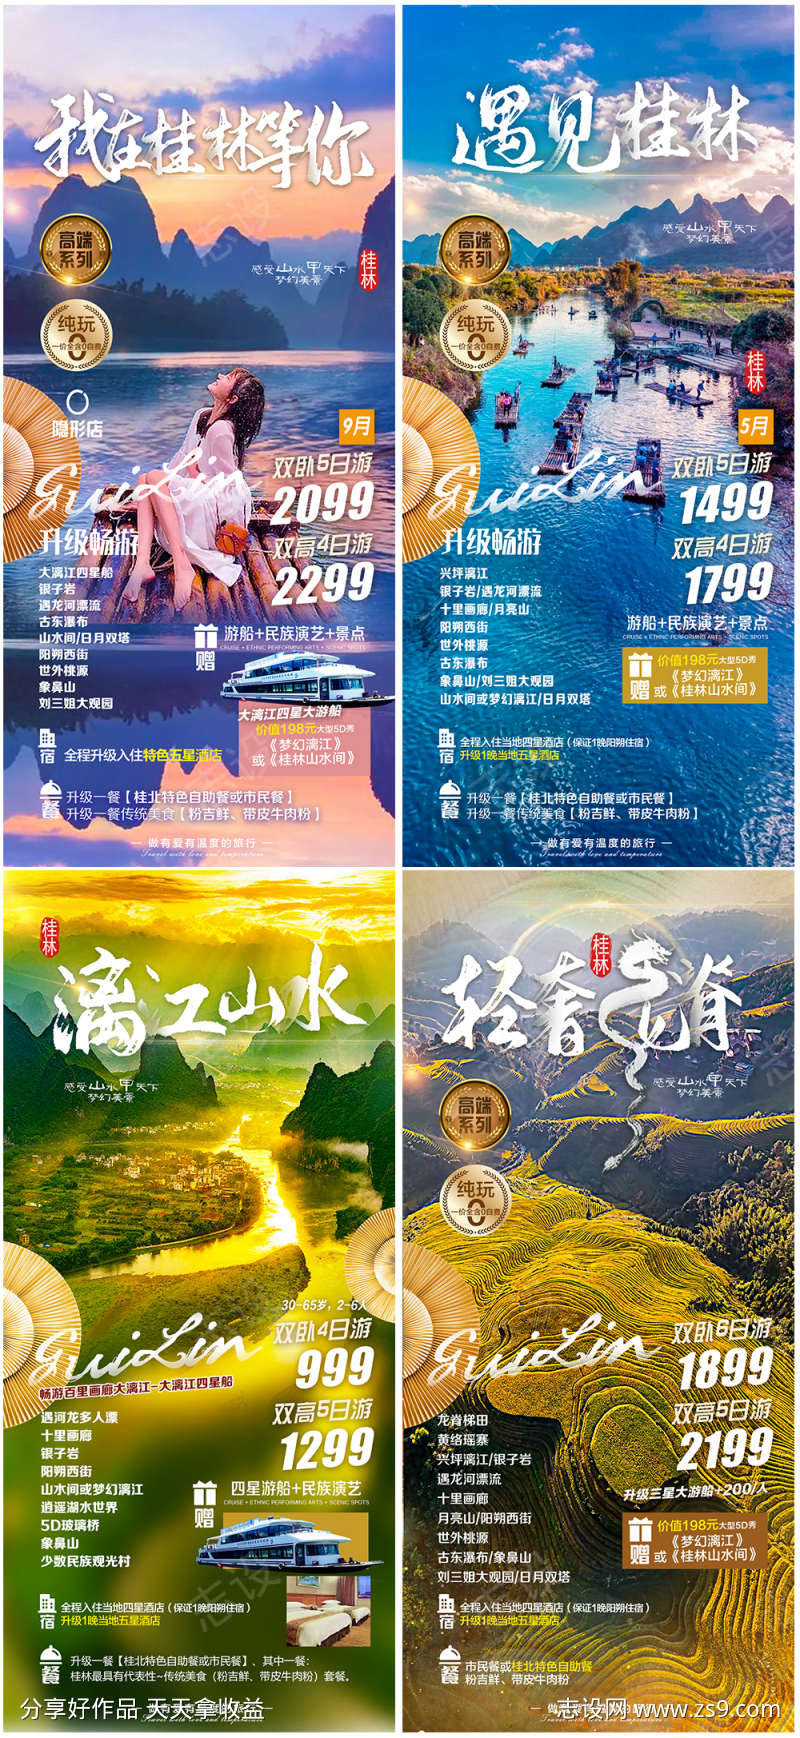 广西桂林旅游系列海报广告